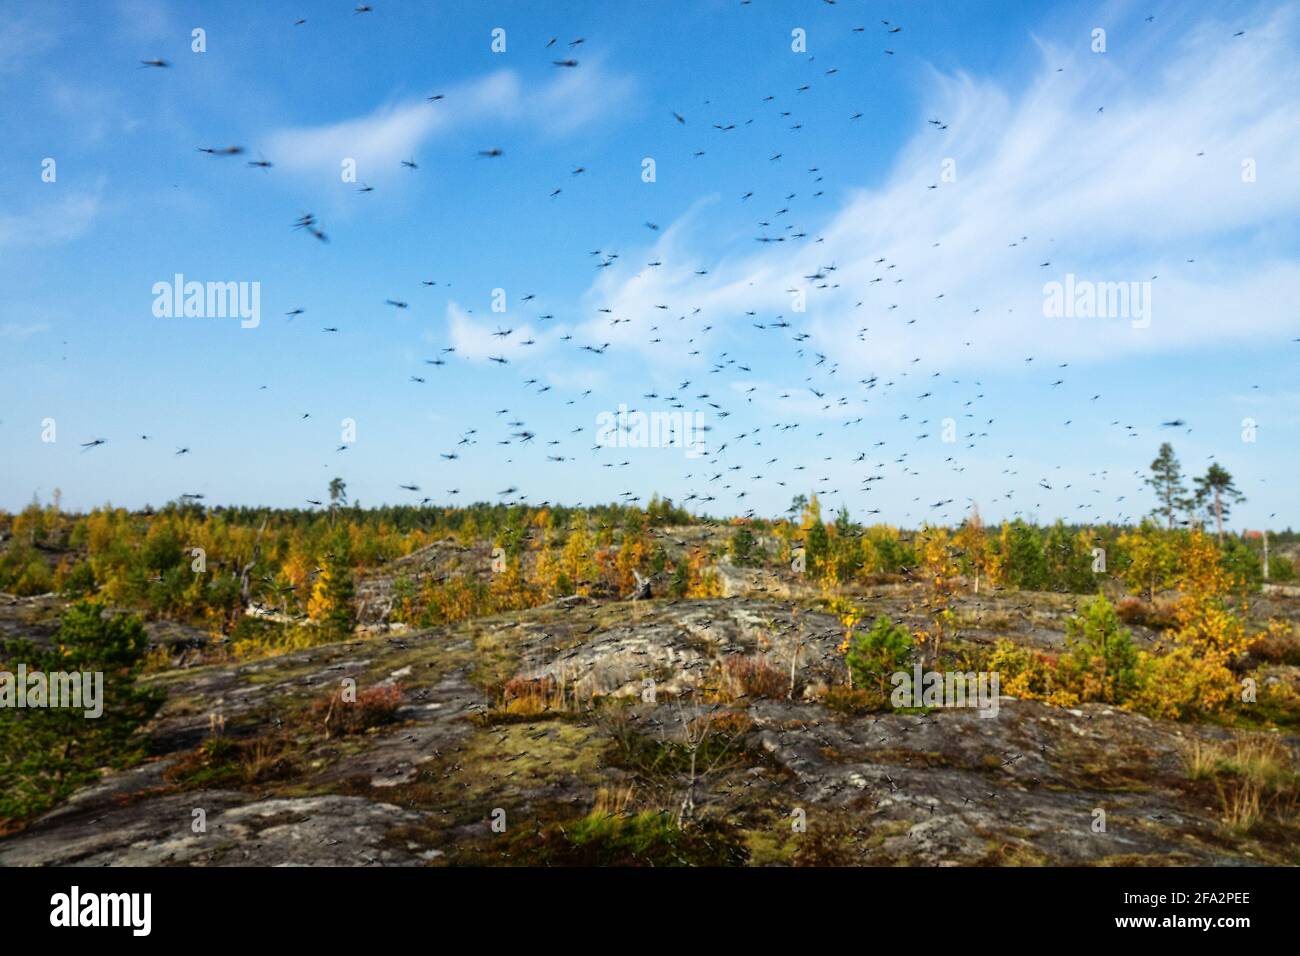 Eine große Anzahl von Mücken (Schwärme von Mücken) Leben in der Bergtundra (Wald-Tundra-Zone) Des zirkumpolaren Nordens Stockfoto